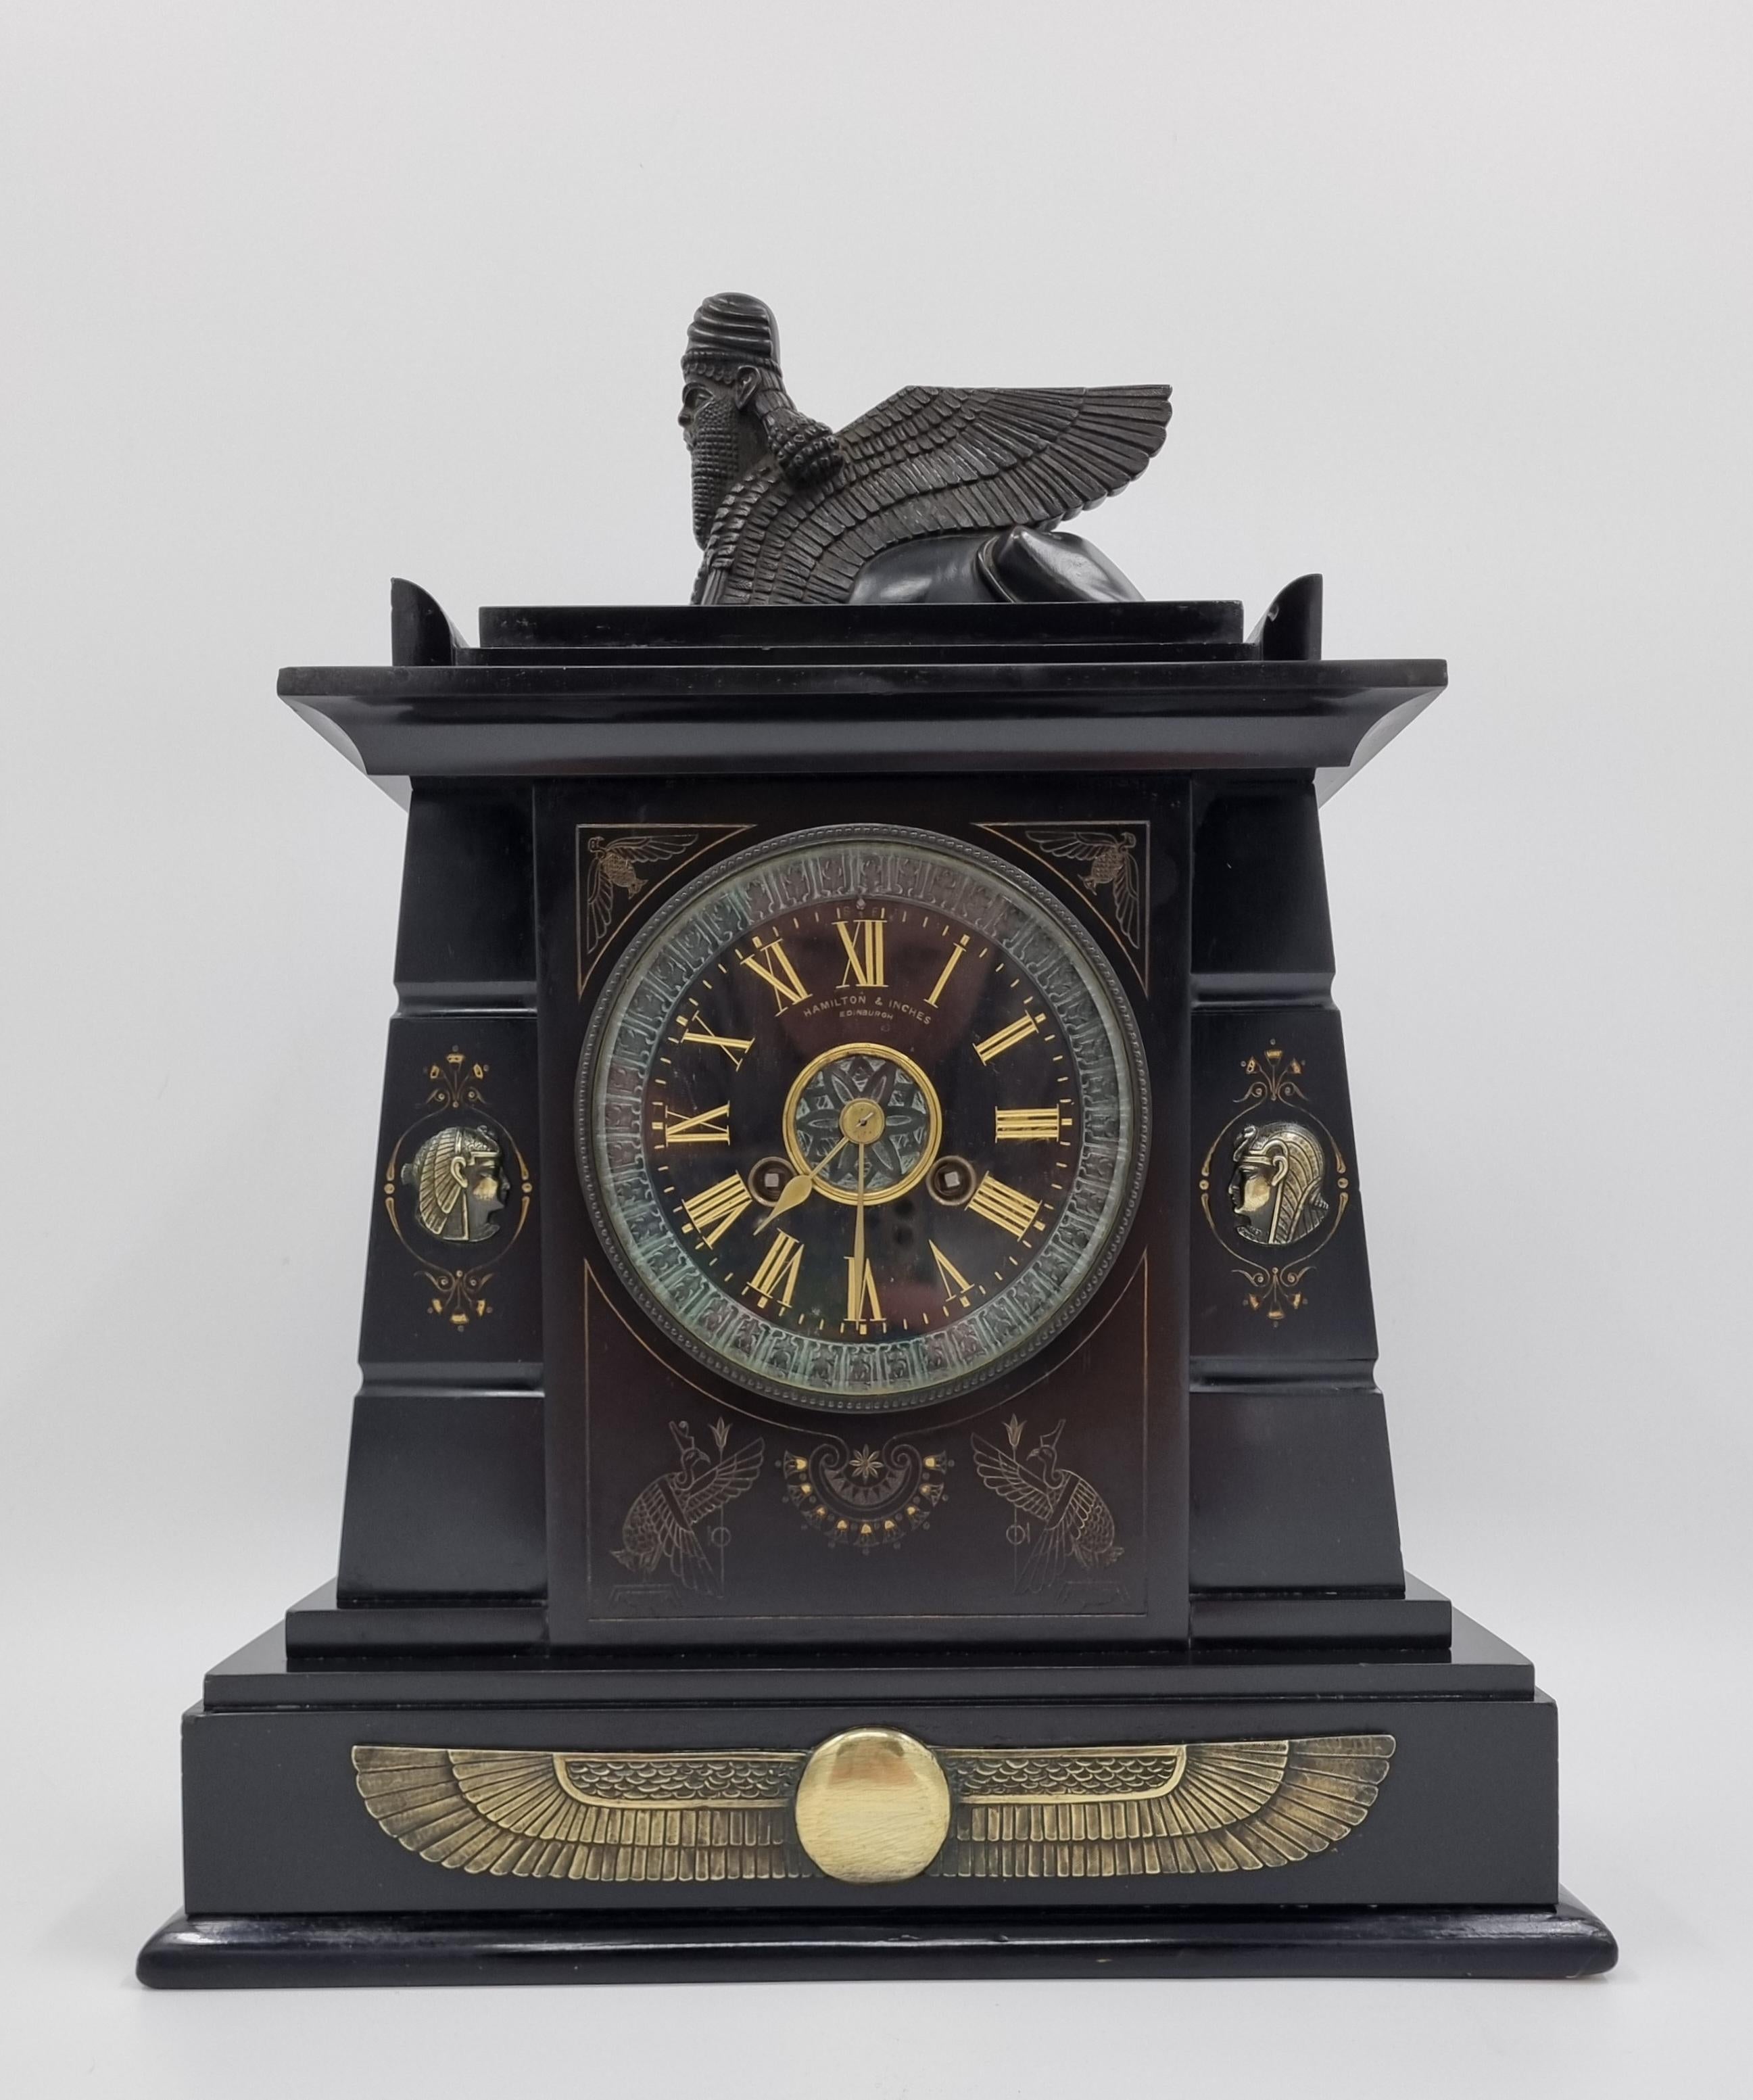 Schwarze Marmoruhr der ägyptischen Wiedergeburt

CIRCA 1860er Jahre, hergestellt von der renommierten Uhren- und Schmuckmanufaktur Hamilton and Inches in Edinburgh mit königlicher Genehmigung von Königin Victoria im Jahr 1893. 

Mit einem